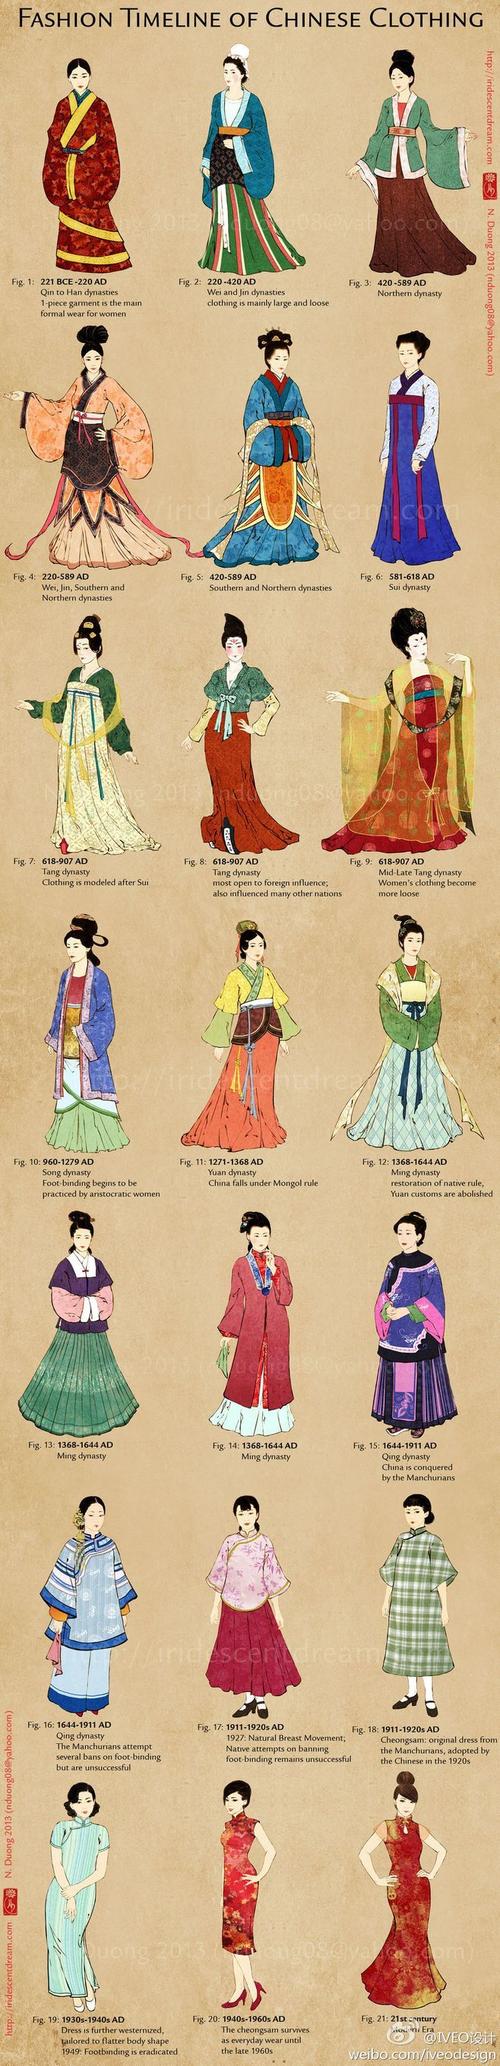 中国历代妇女服饰的演变,从汉代到21世纪 (历史上的女性服饰完全没有